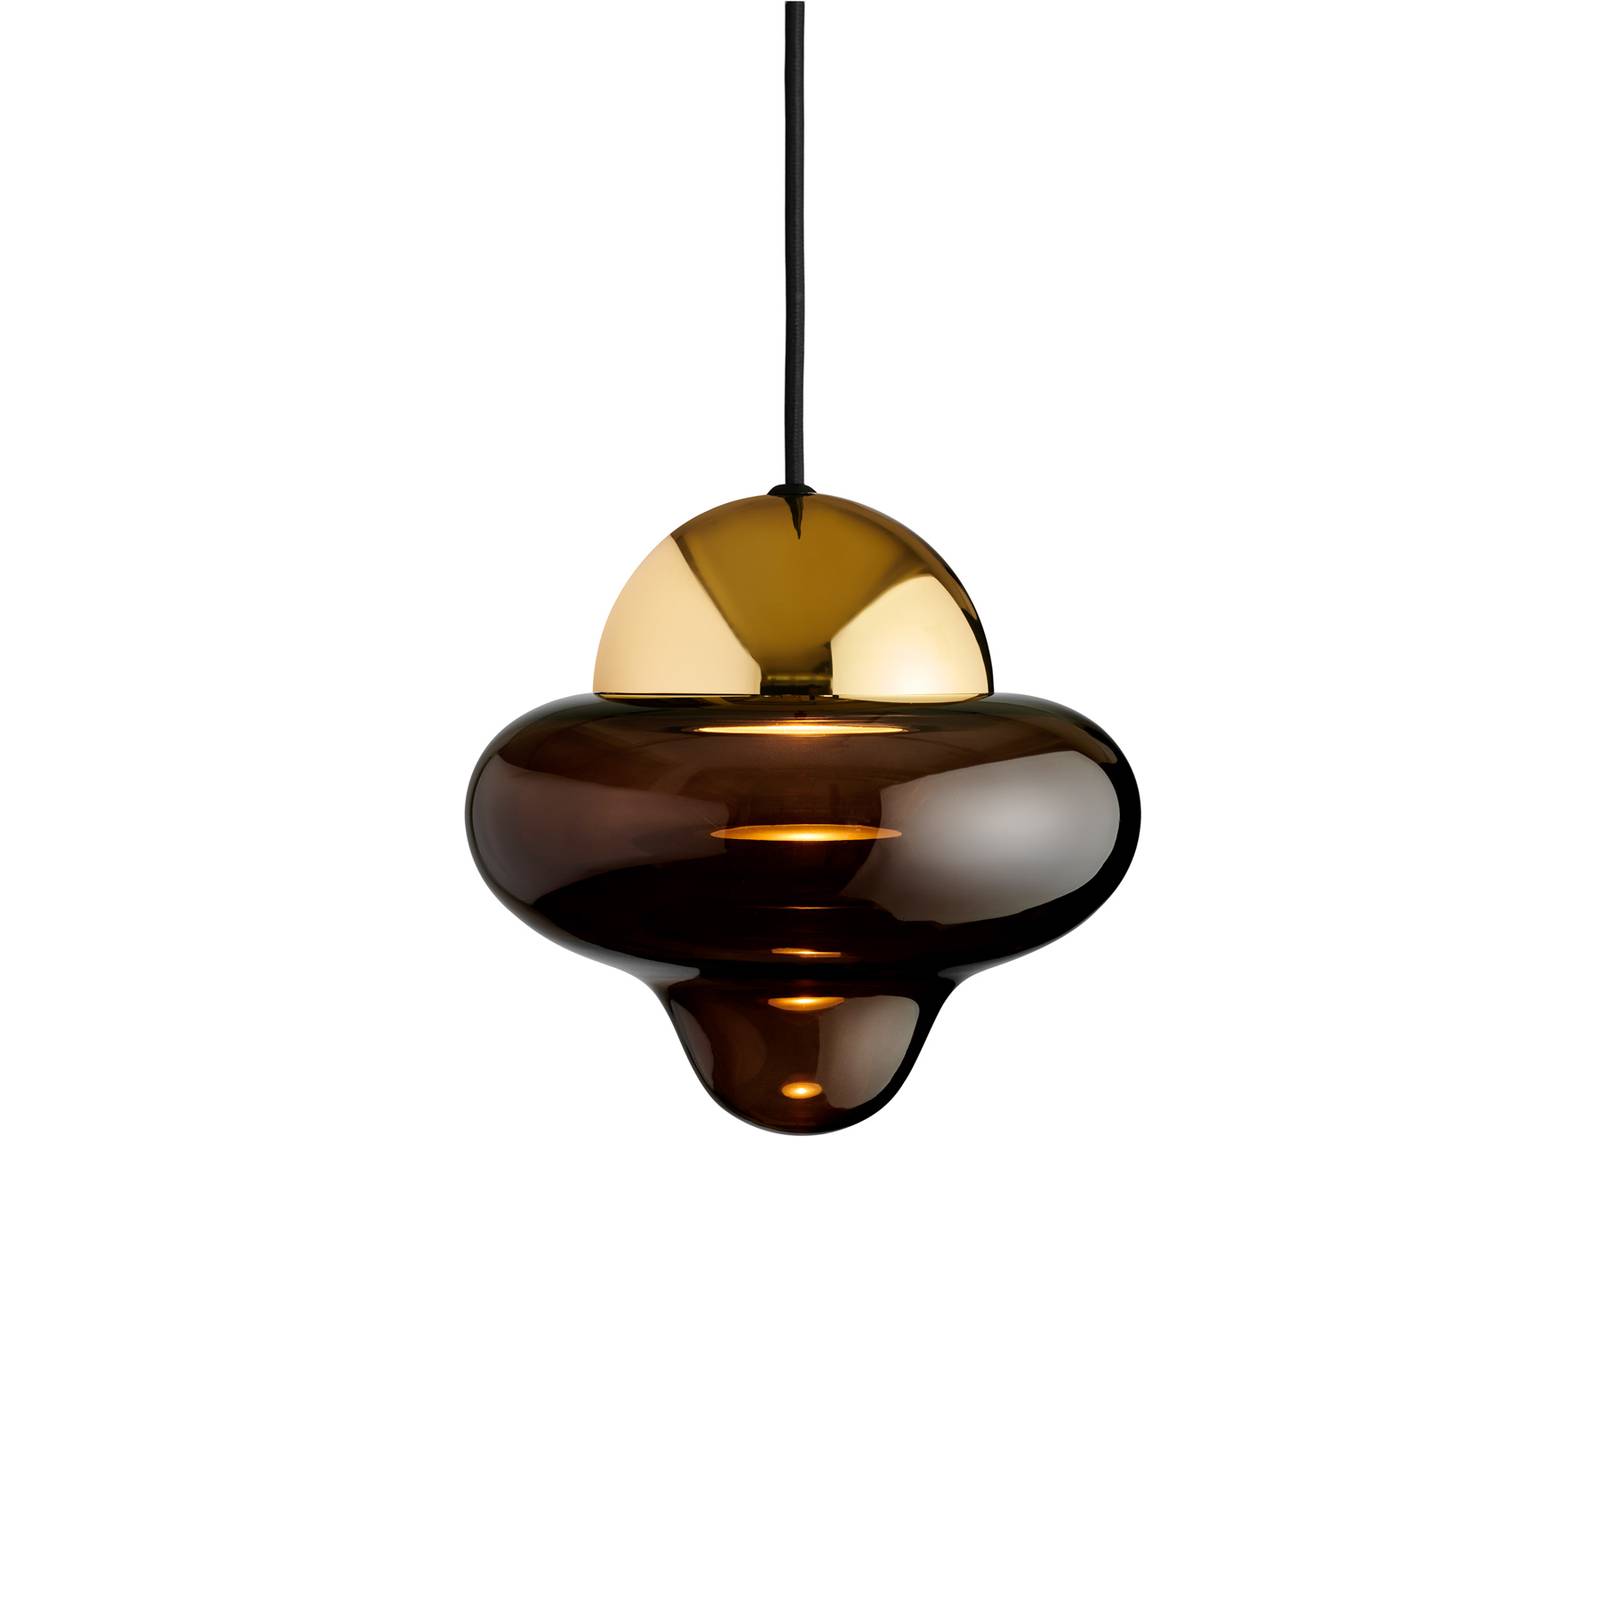 LED-Hängeleuchte Nutty, braun / goldfarben, Ø 18,5 cm, Glas von DESIGN BY US